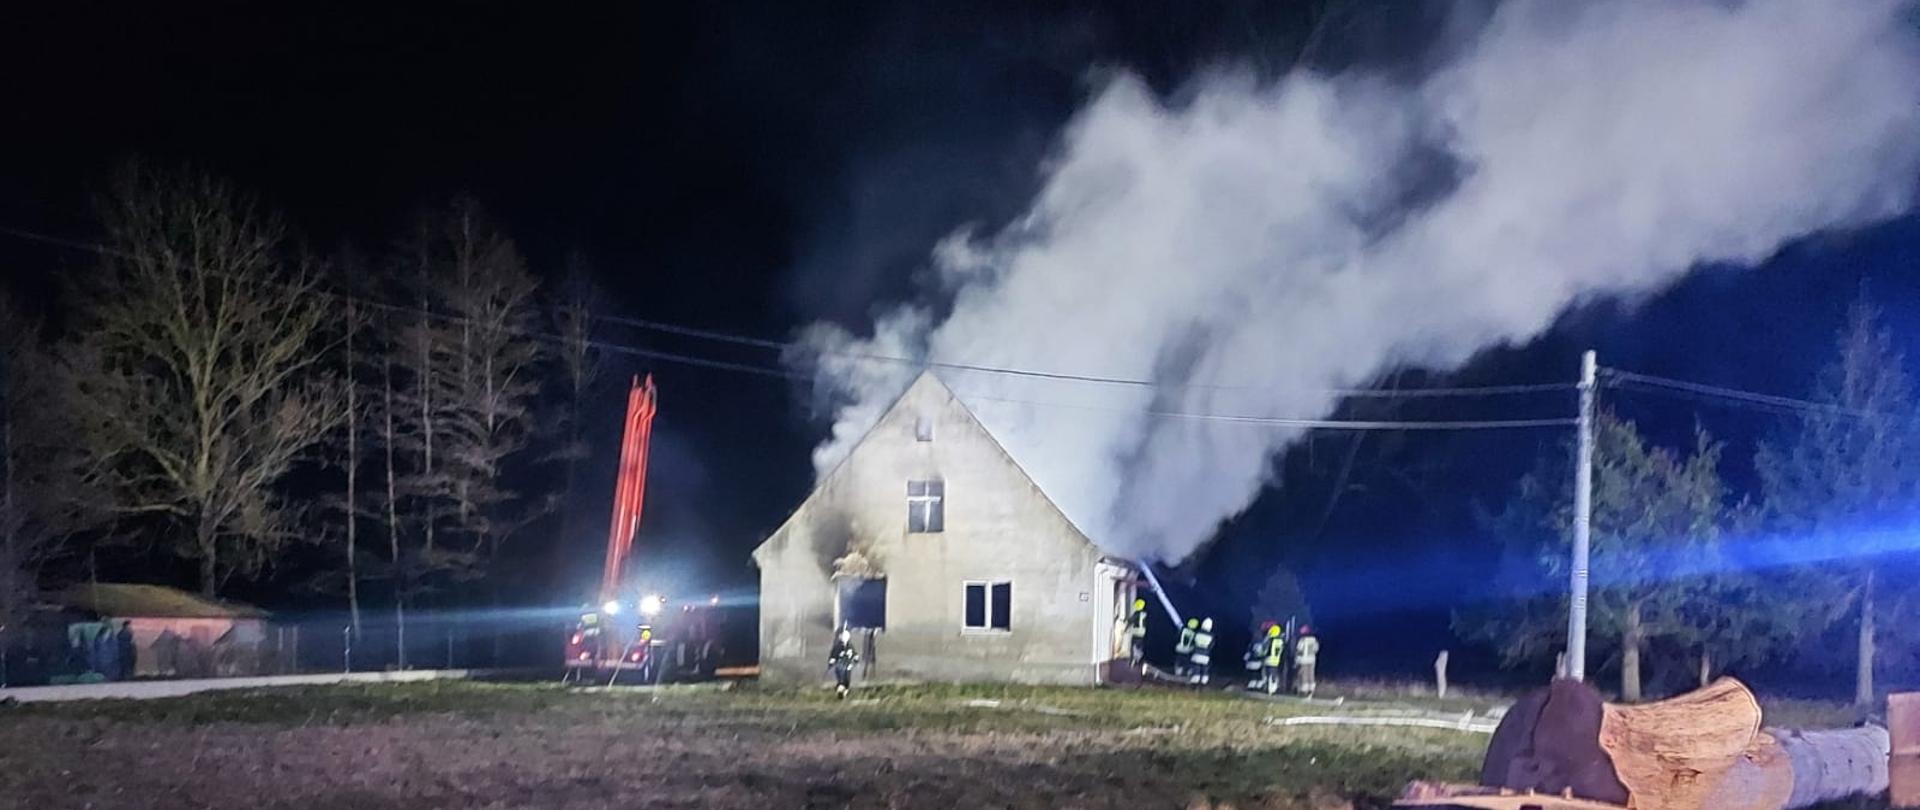 Kolejny tragiczny pożar na terenie pow. olsztyńskiego